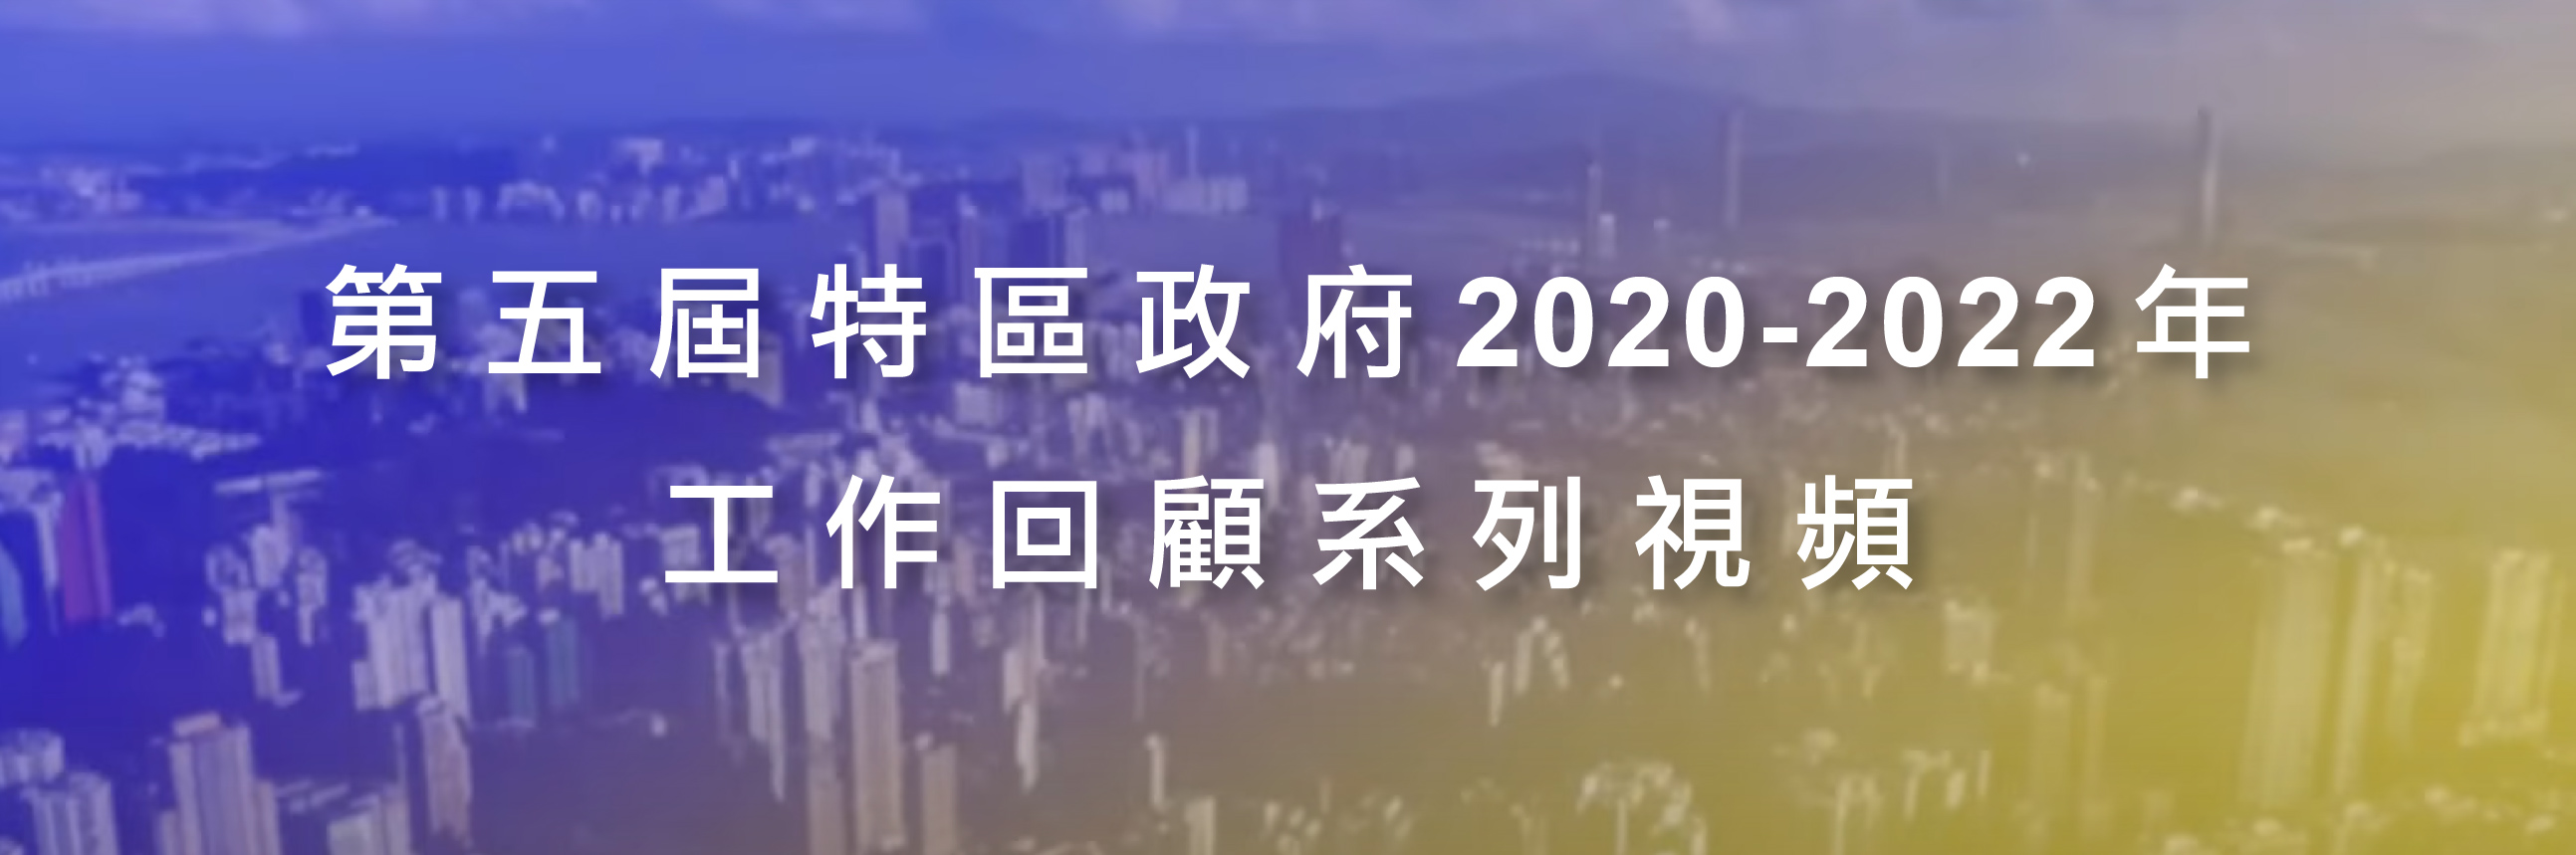 第五届特区政府2020-2022年工作回顾系列视频